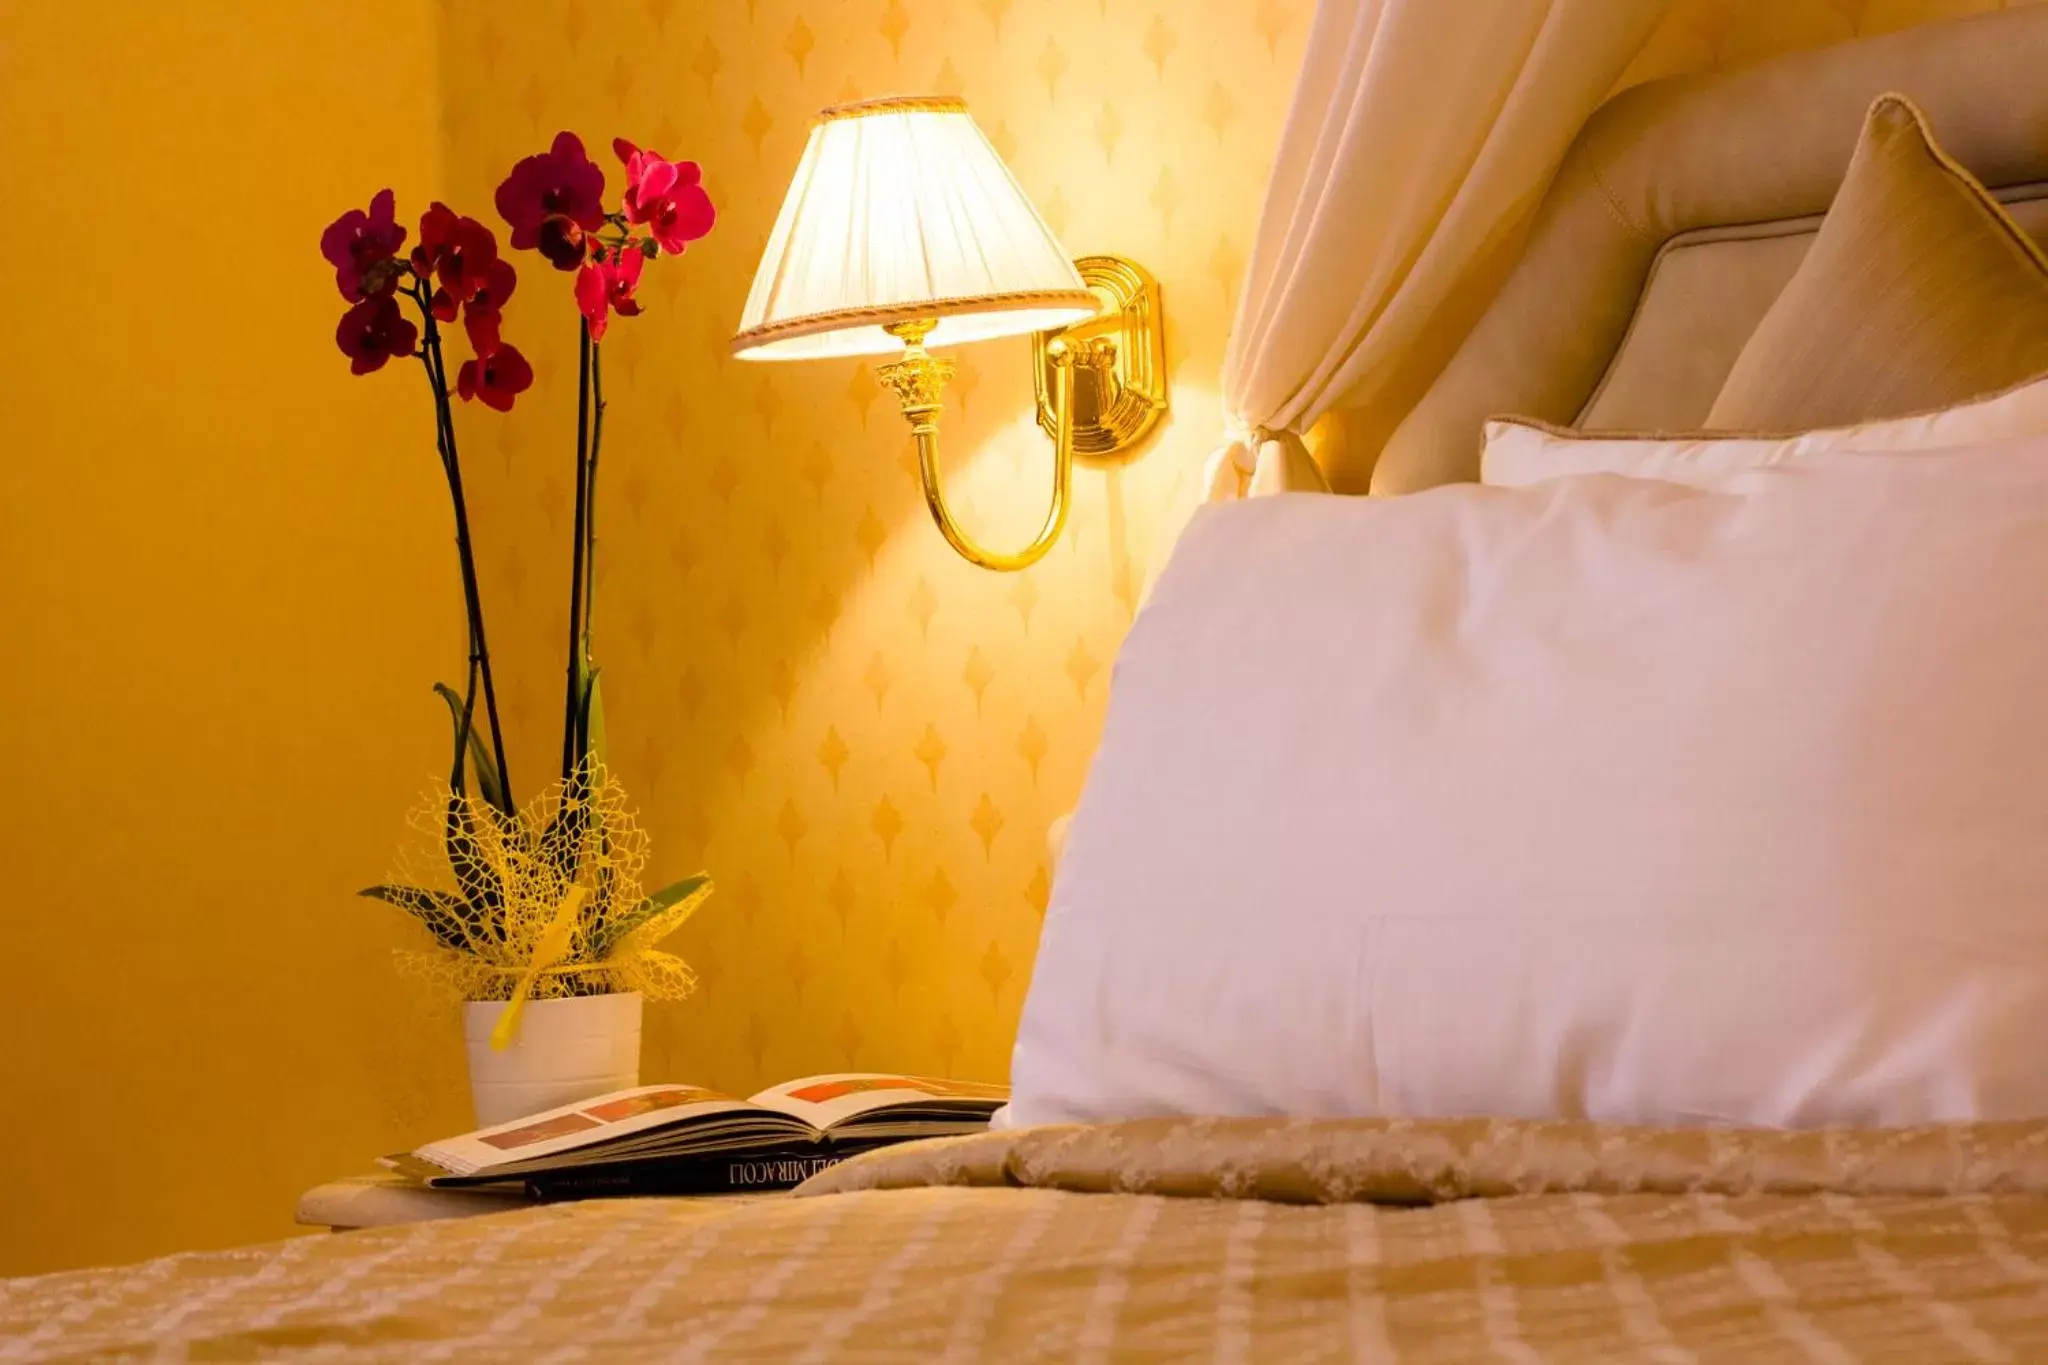 Bed in Hotel La Locanda